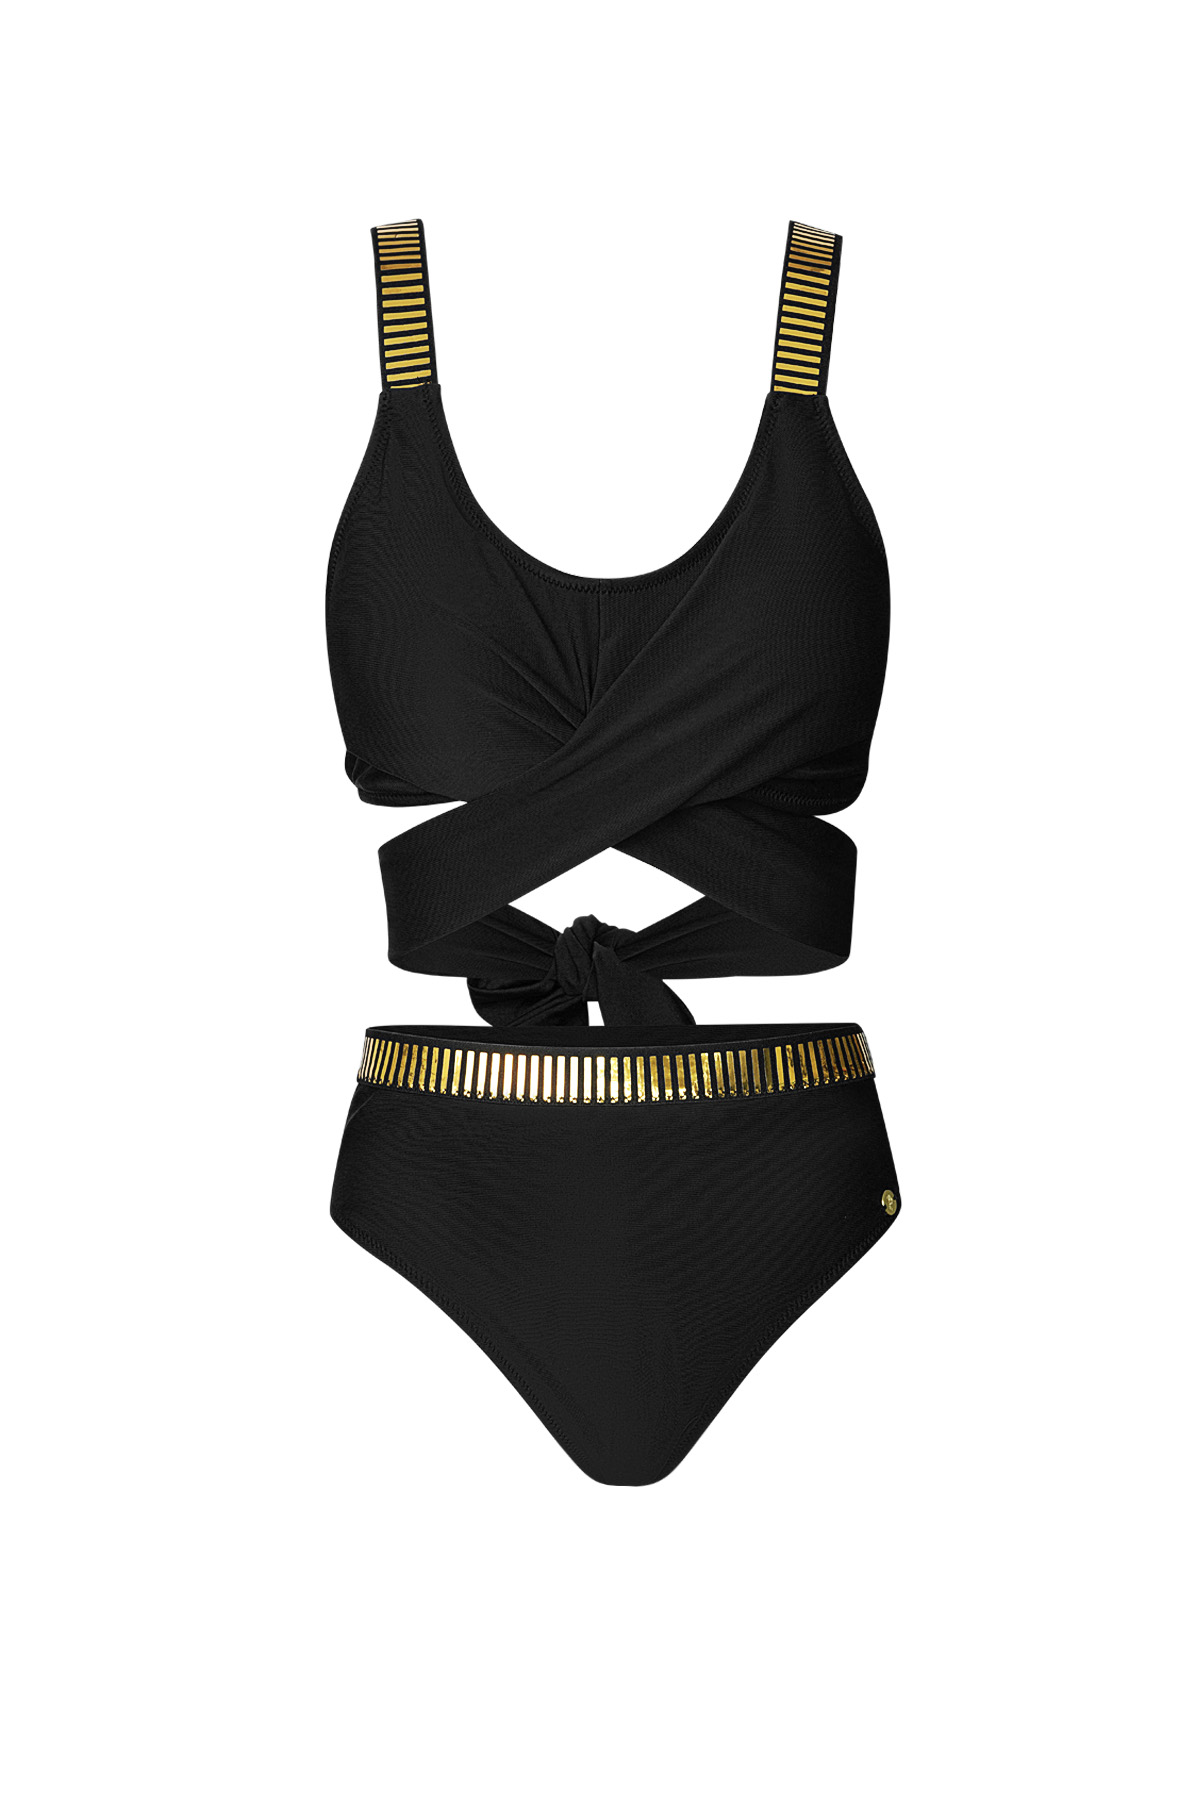 Button bikini gold stripes - black M h5 